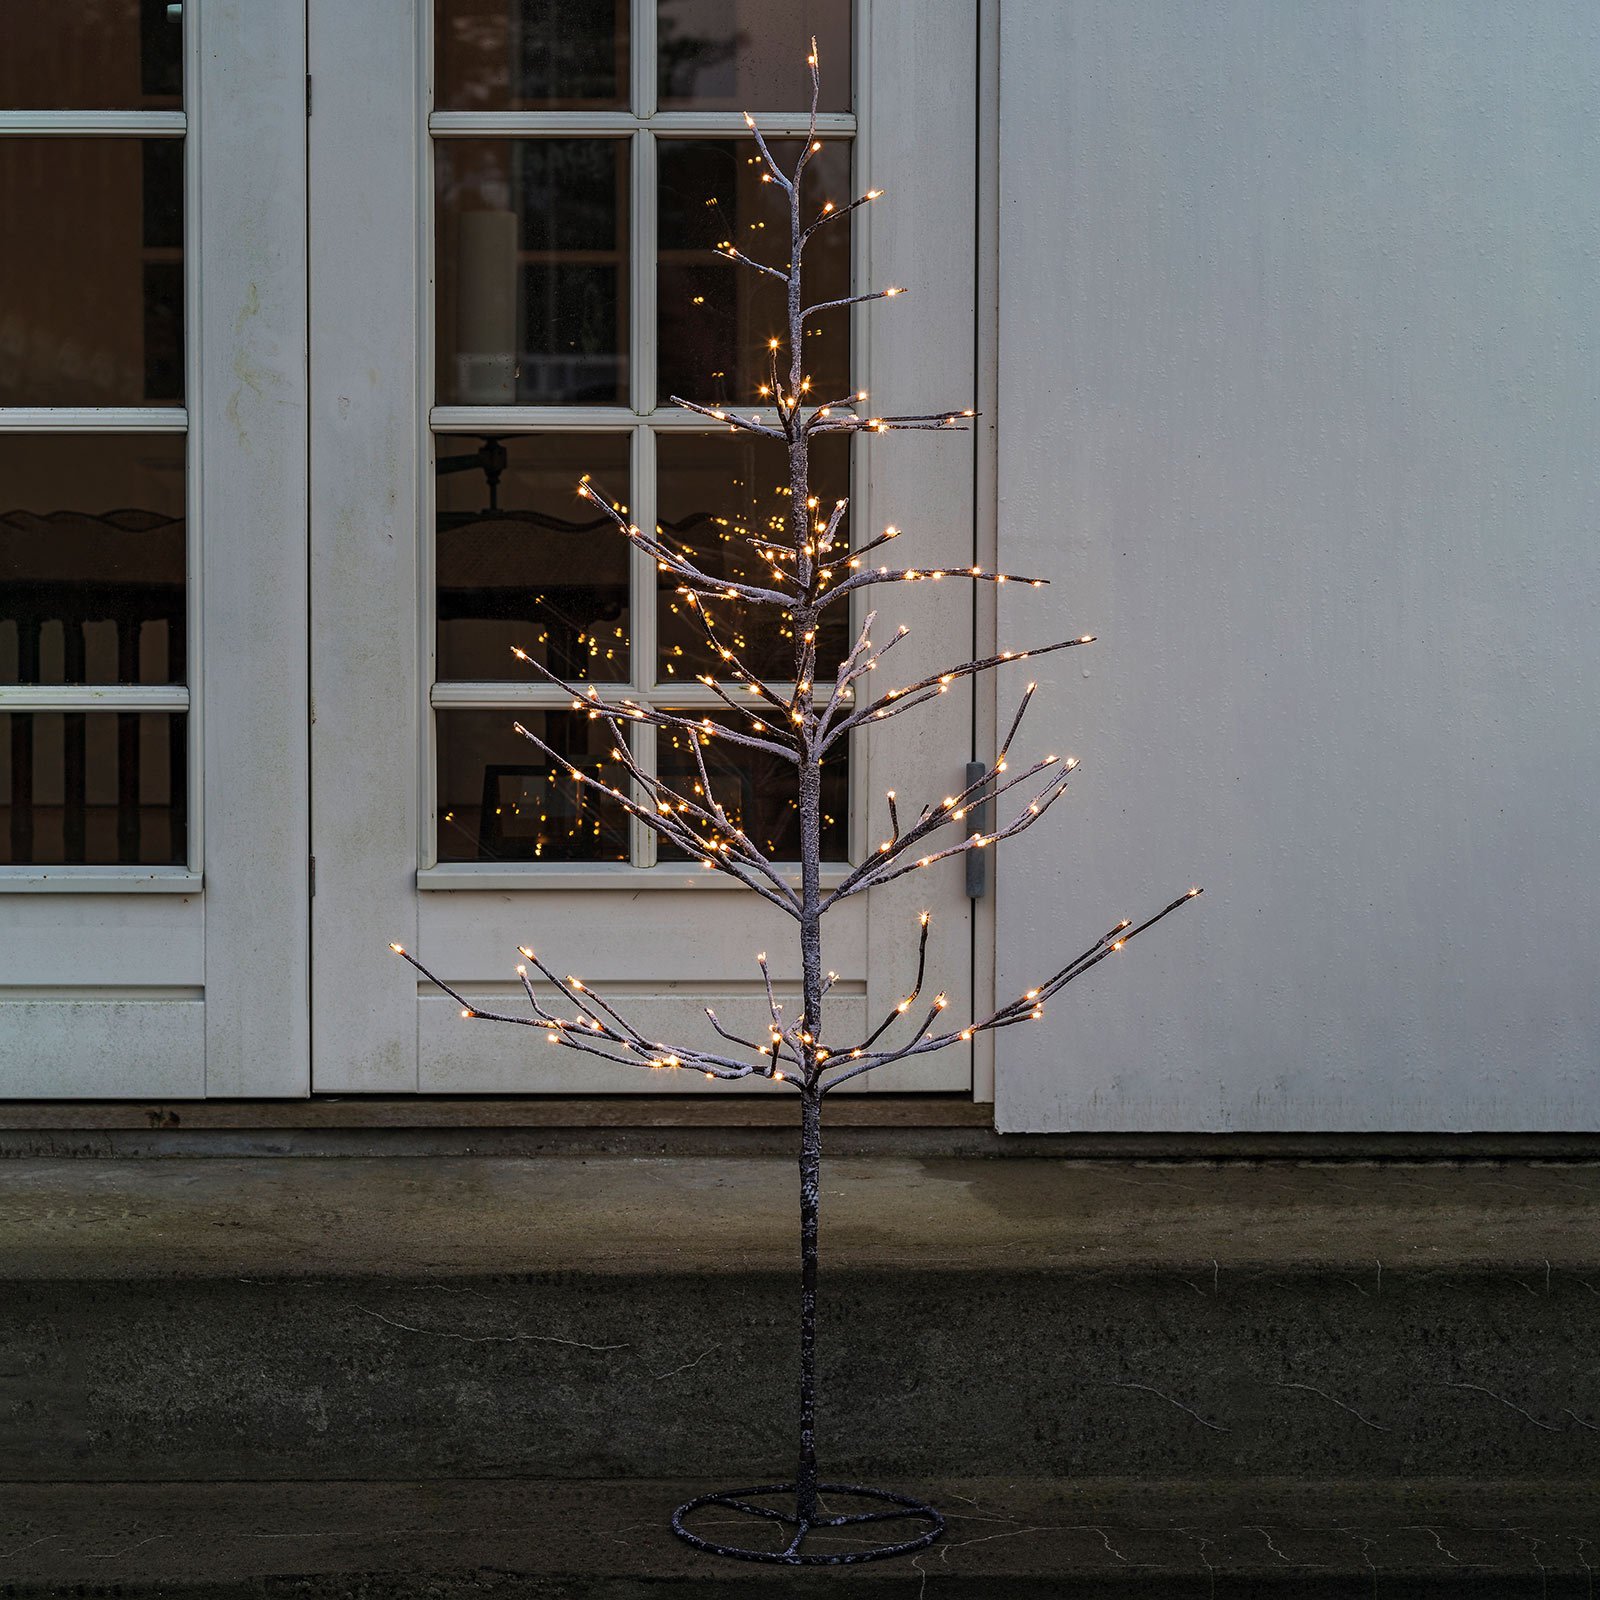 Alex LED drevo s snežnim videzom, višina 90 cm